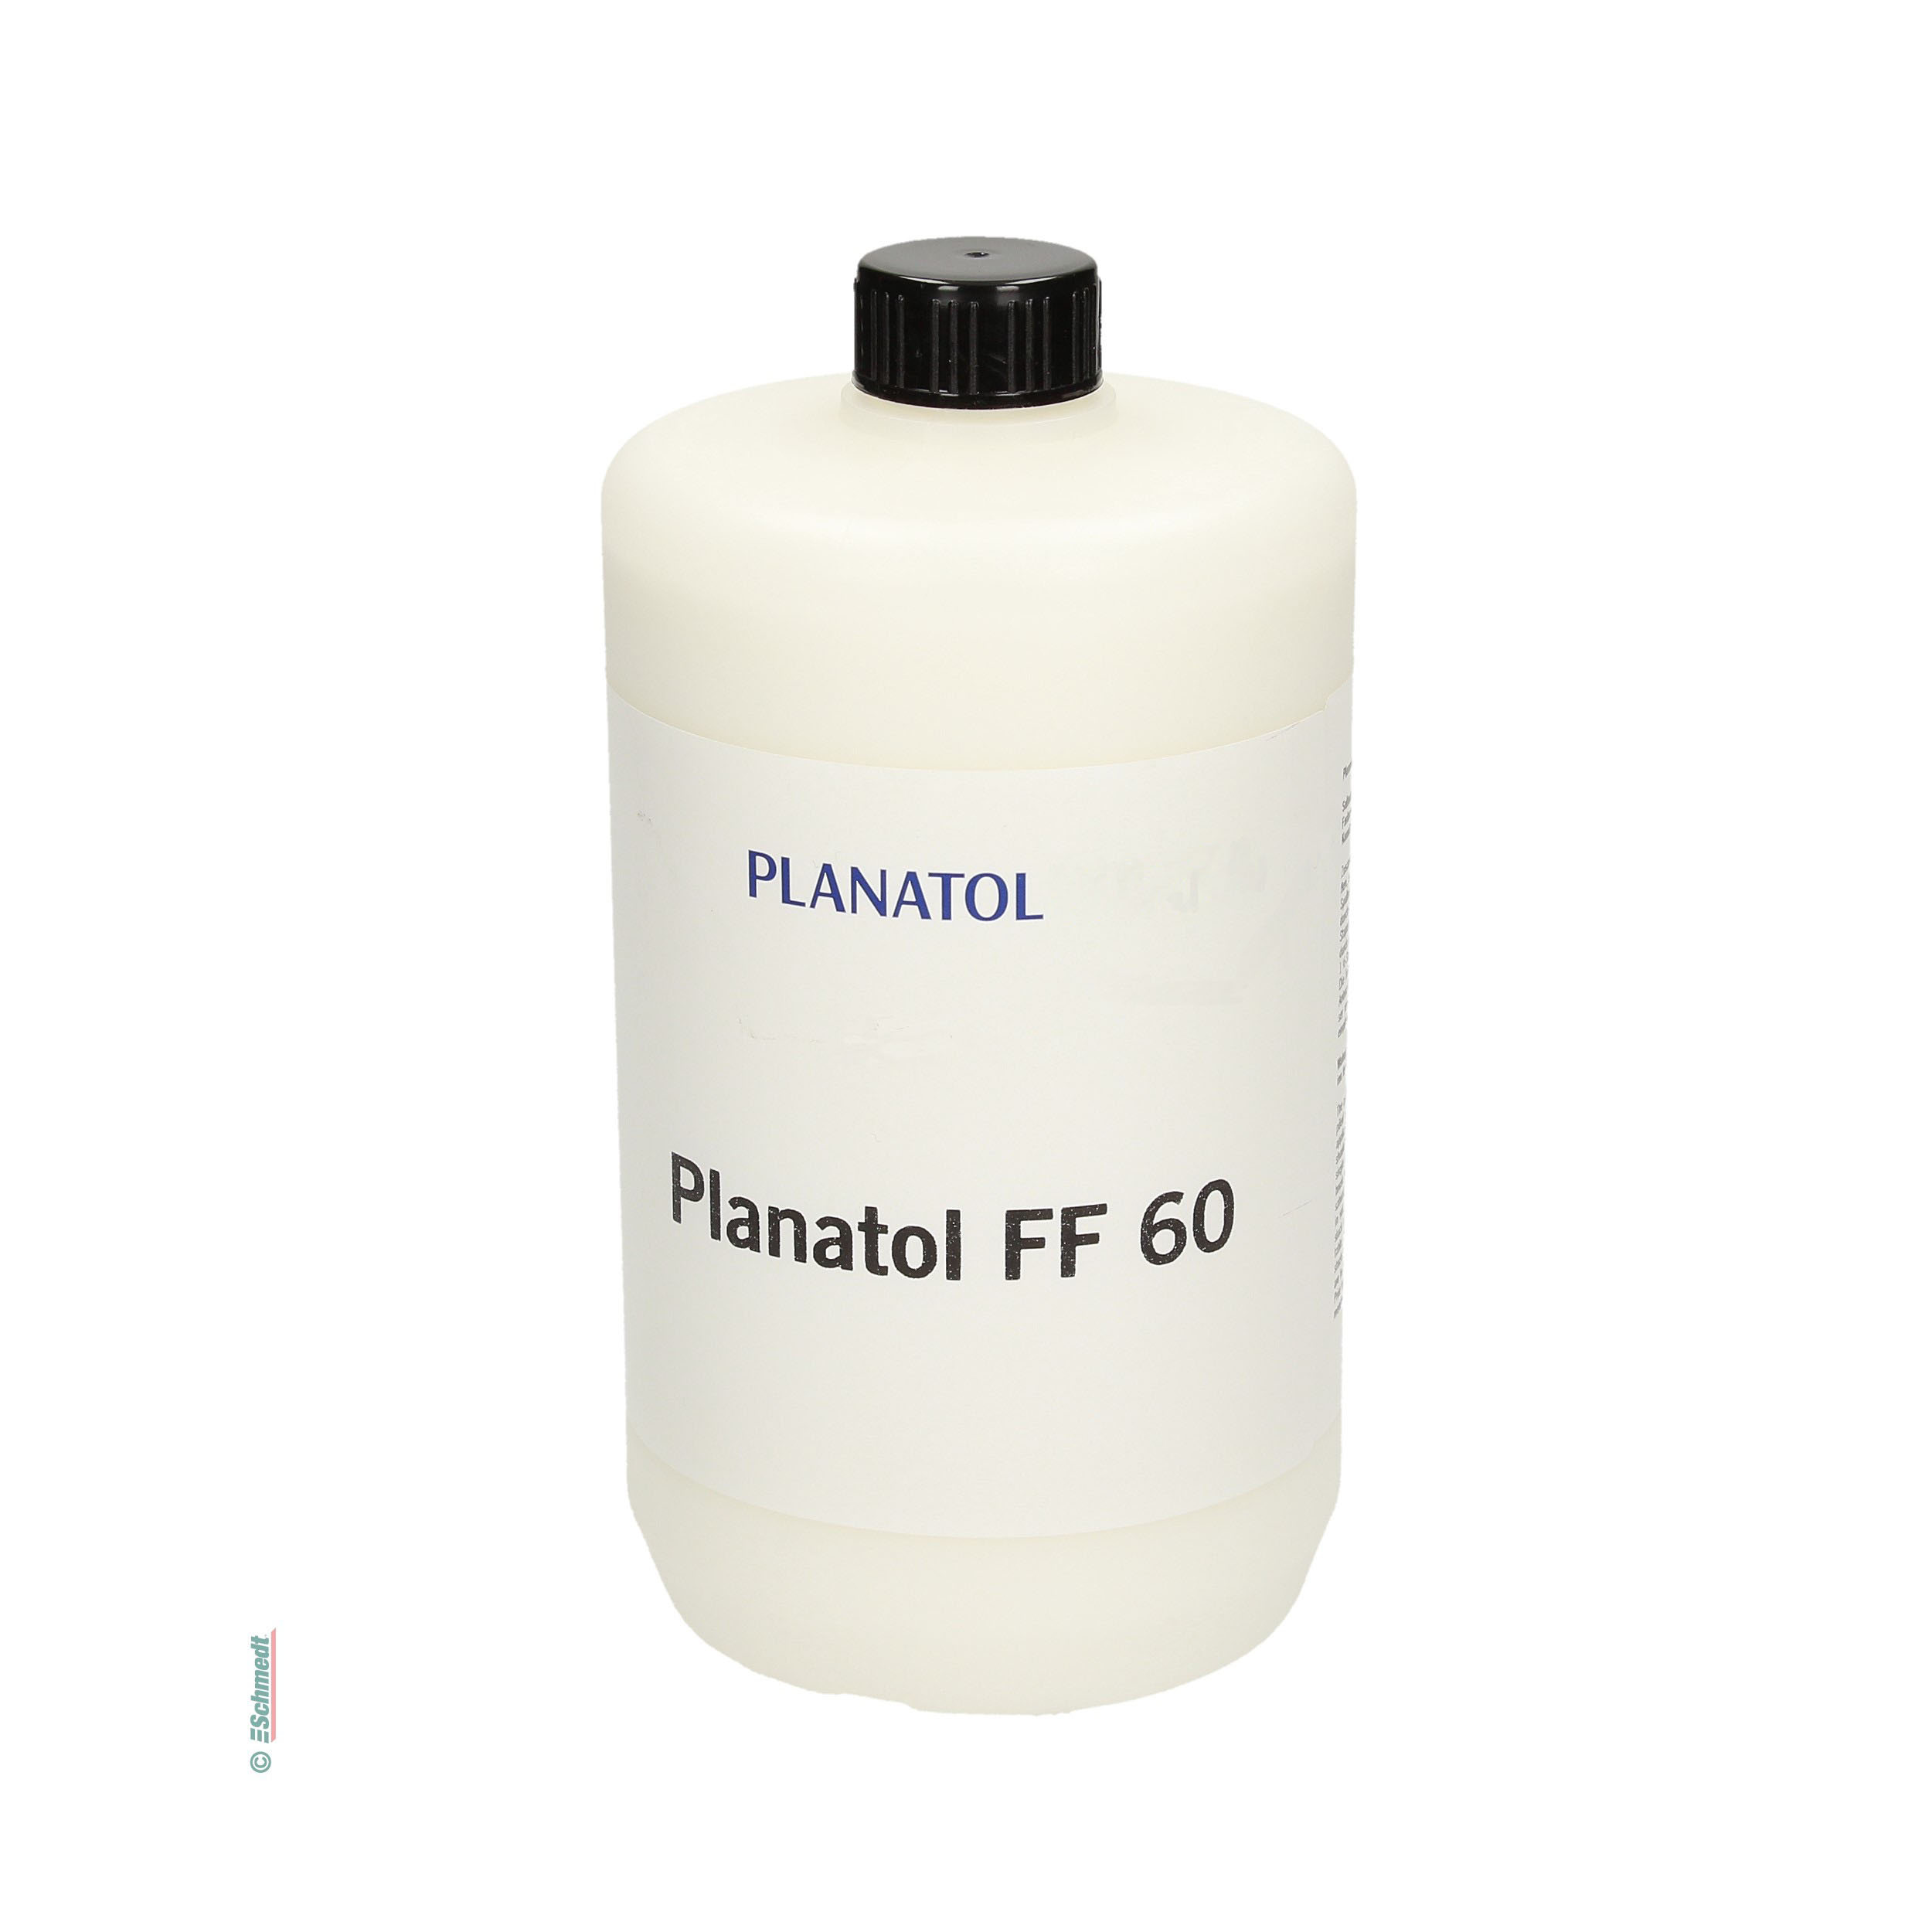 Planatol FF 60 - Cola de dispersión para juegos de formularios - Aplicación: cola auto-separable para la elaboración de juegos de formulario...